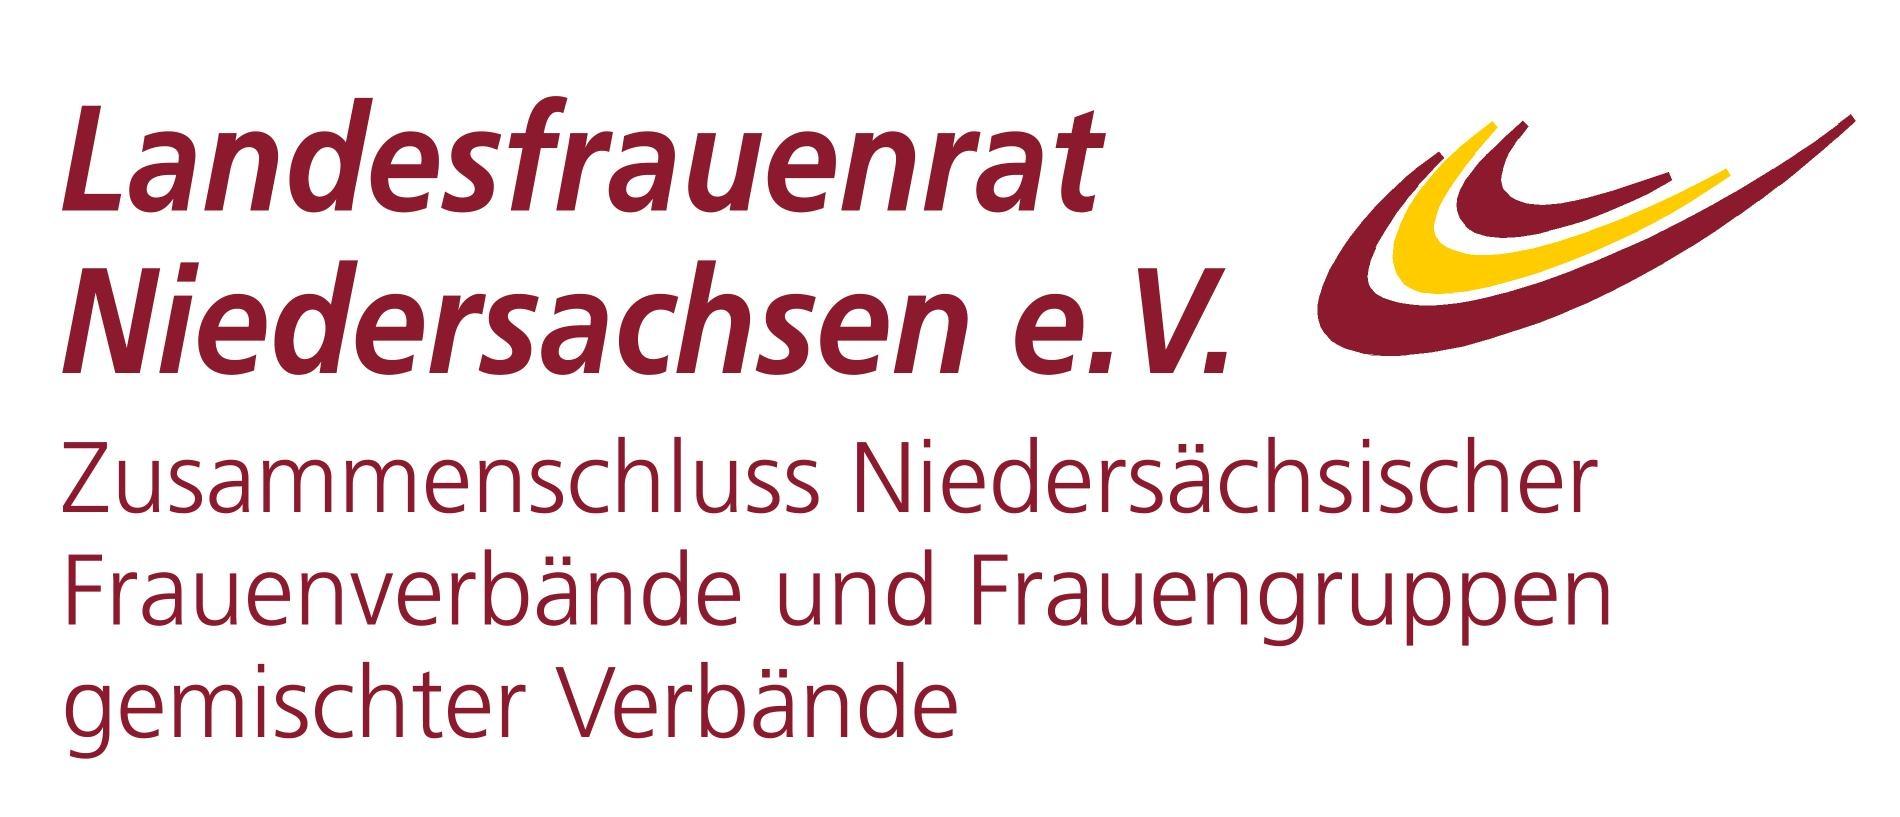 Landesfrauenrat Niedersachsen e.V